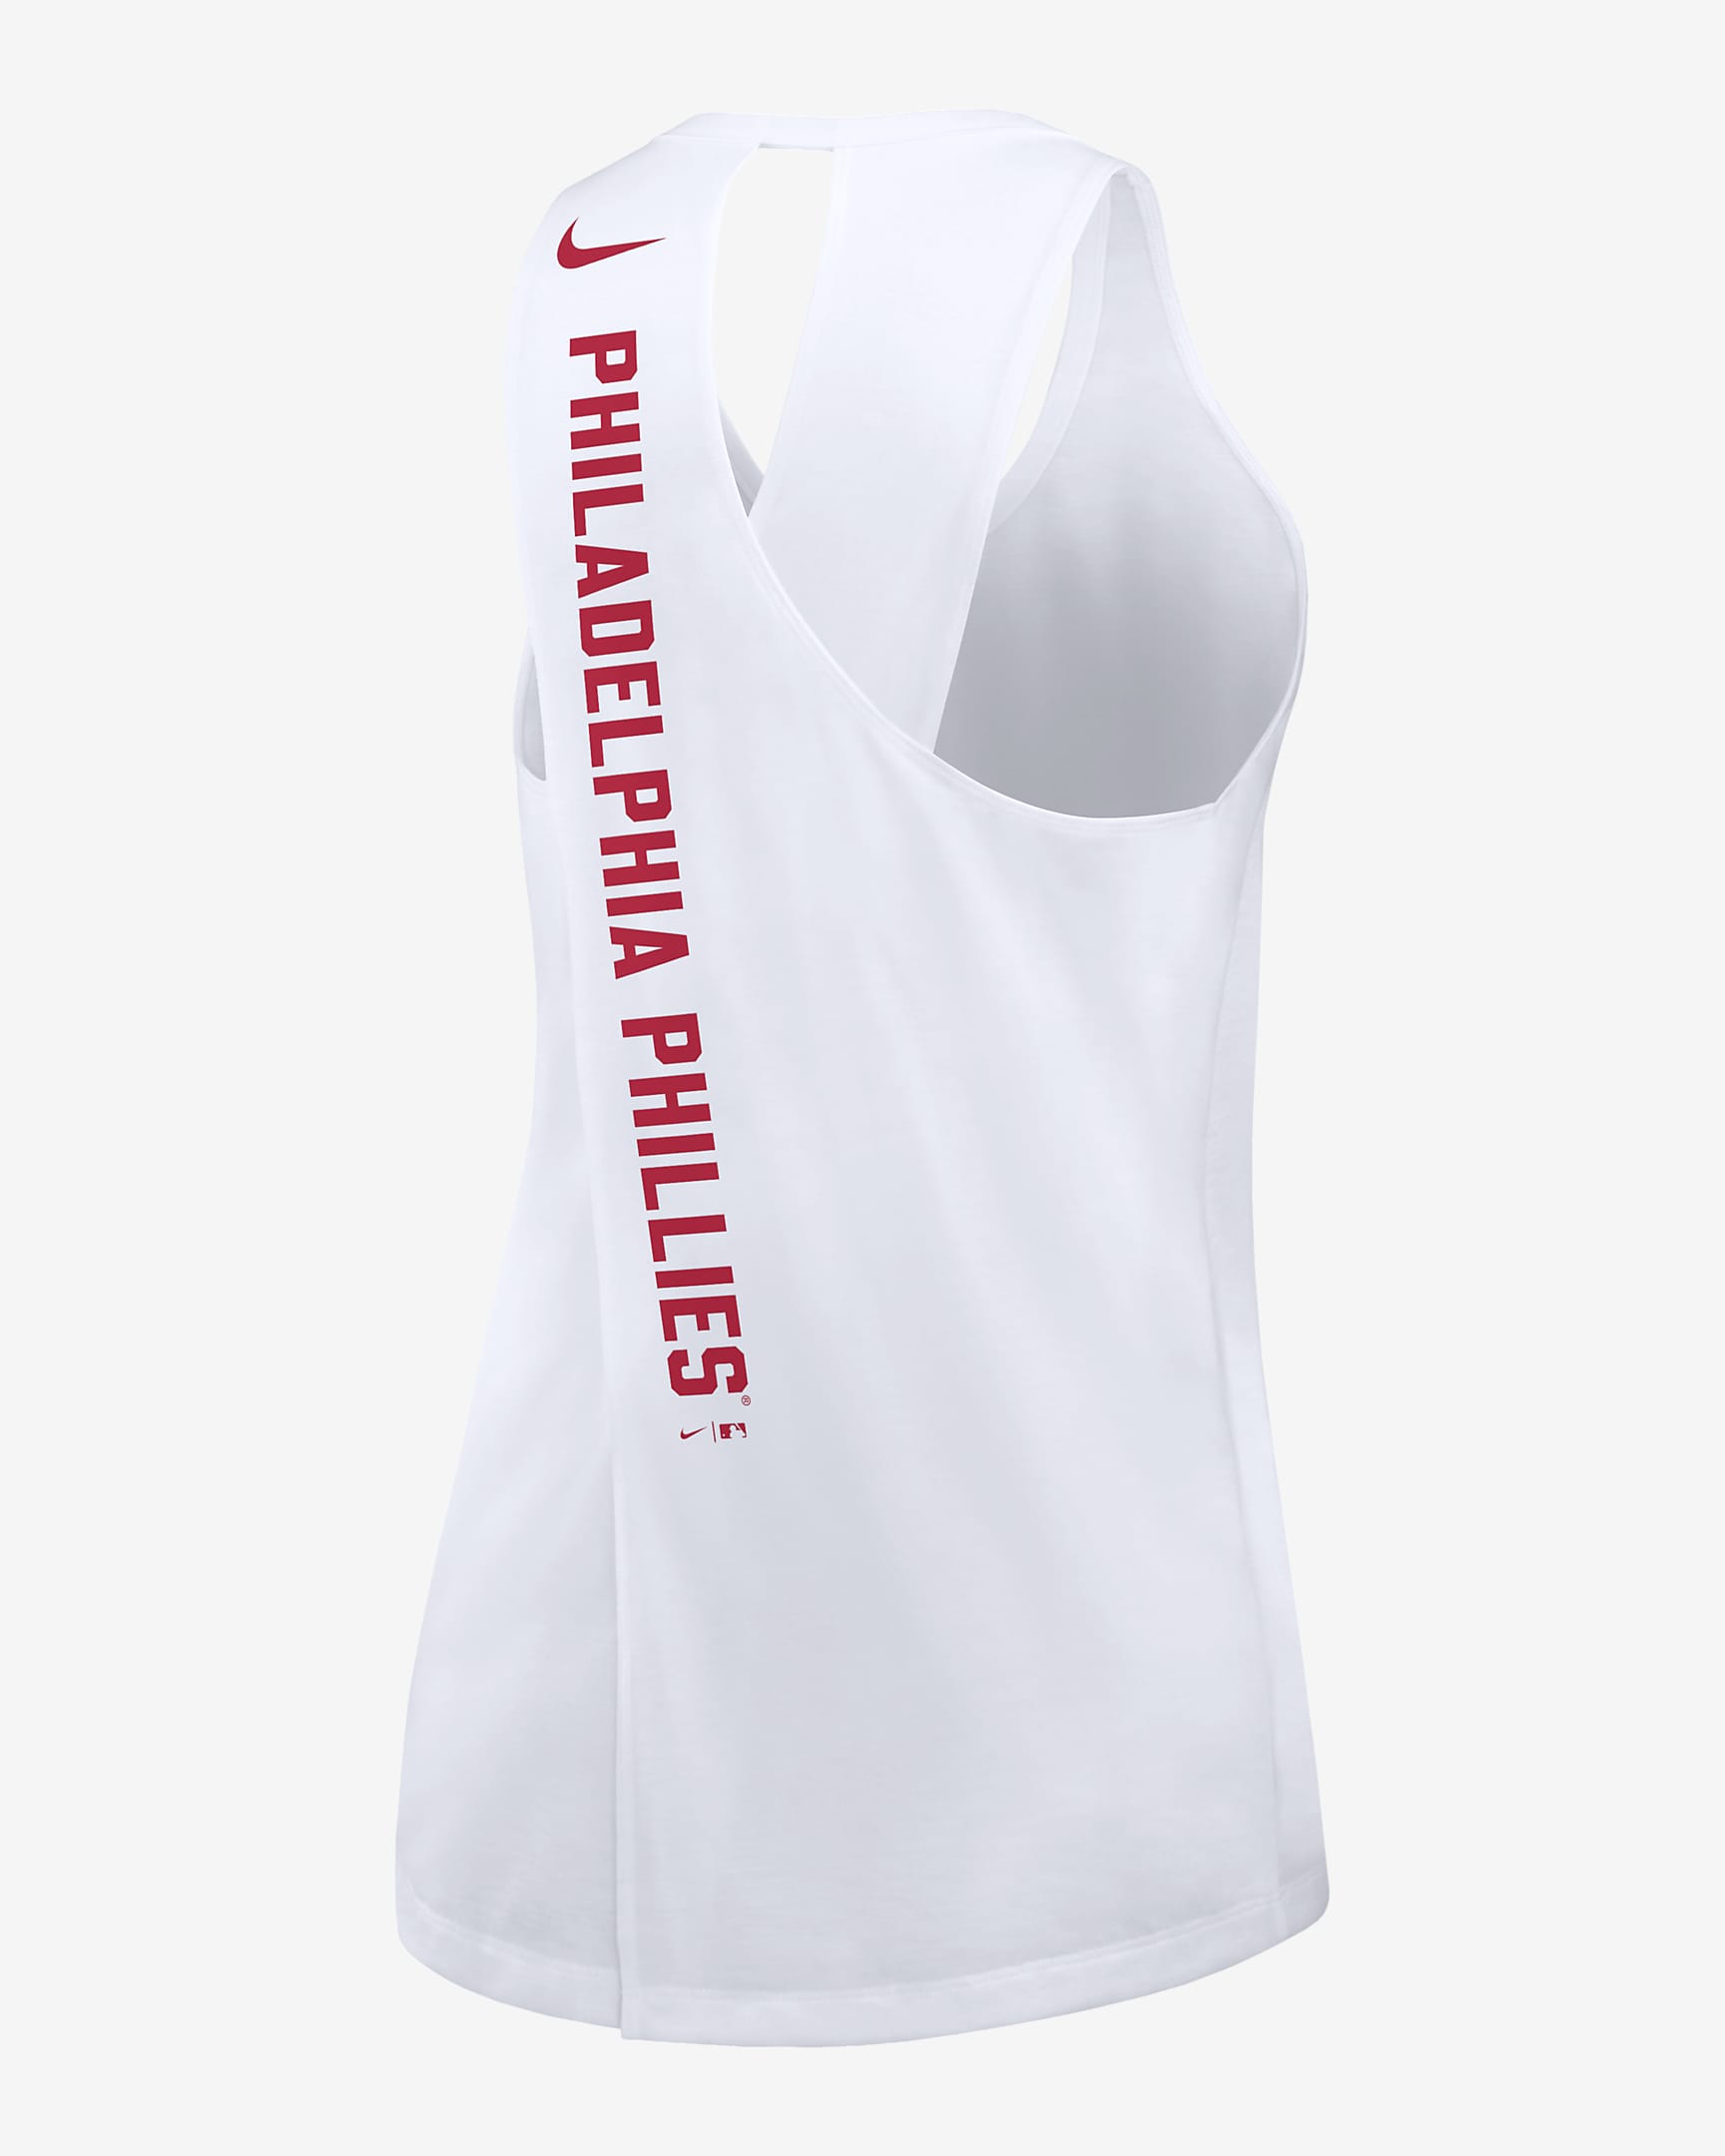 Camiseta de tirantes Nike de la MLB para mujer Philadelphia Phillies ...